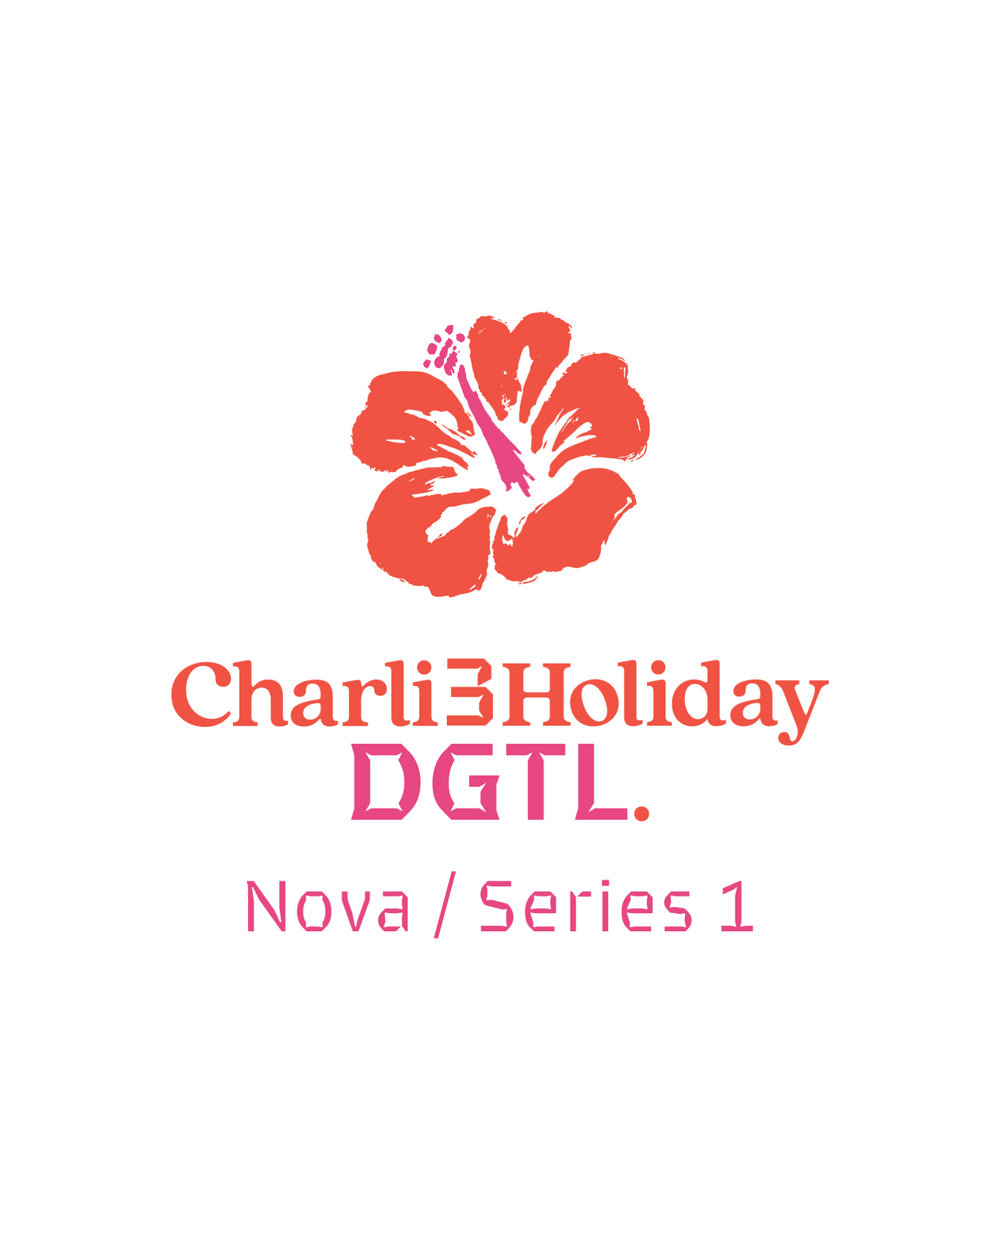 Introducing Nova from Charli3 Holiday DGTL